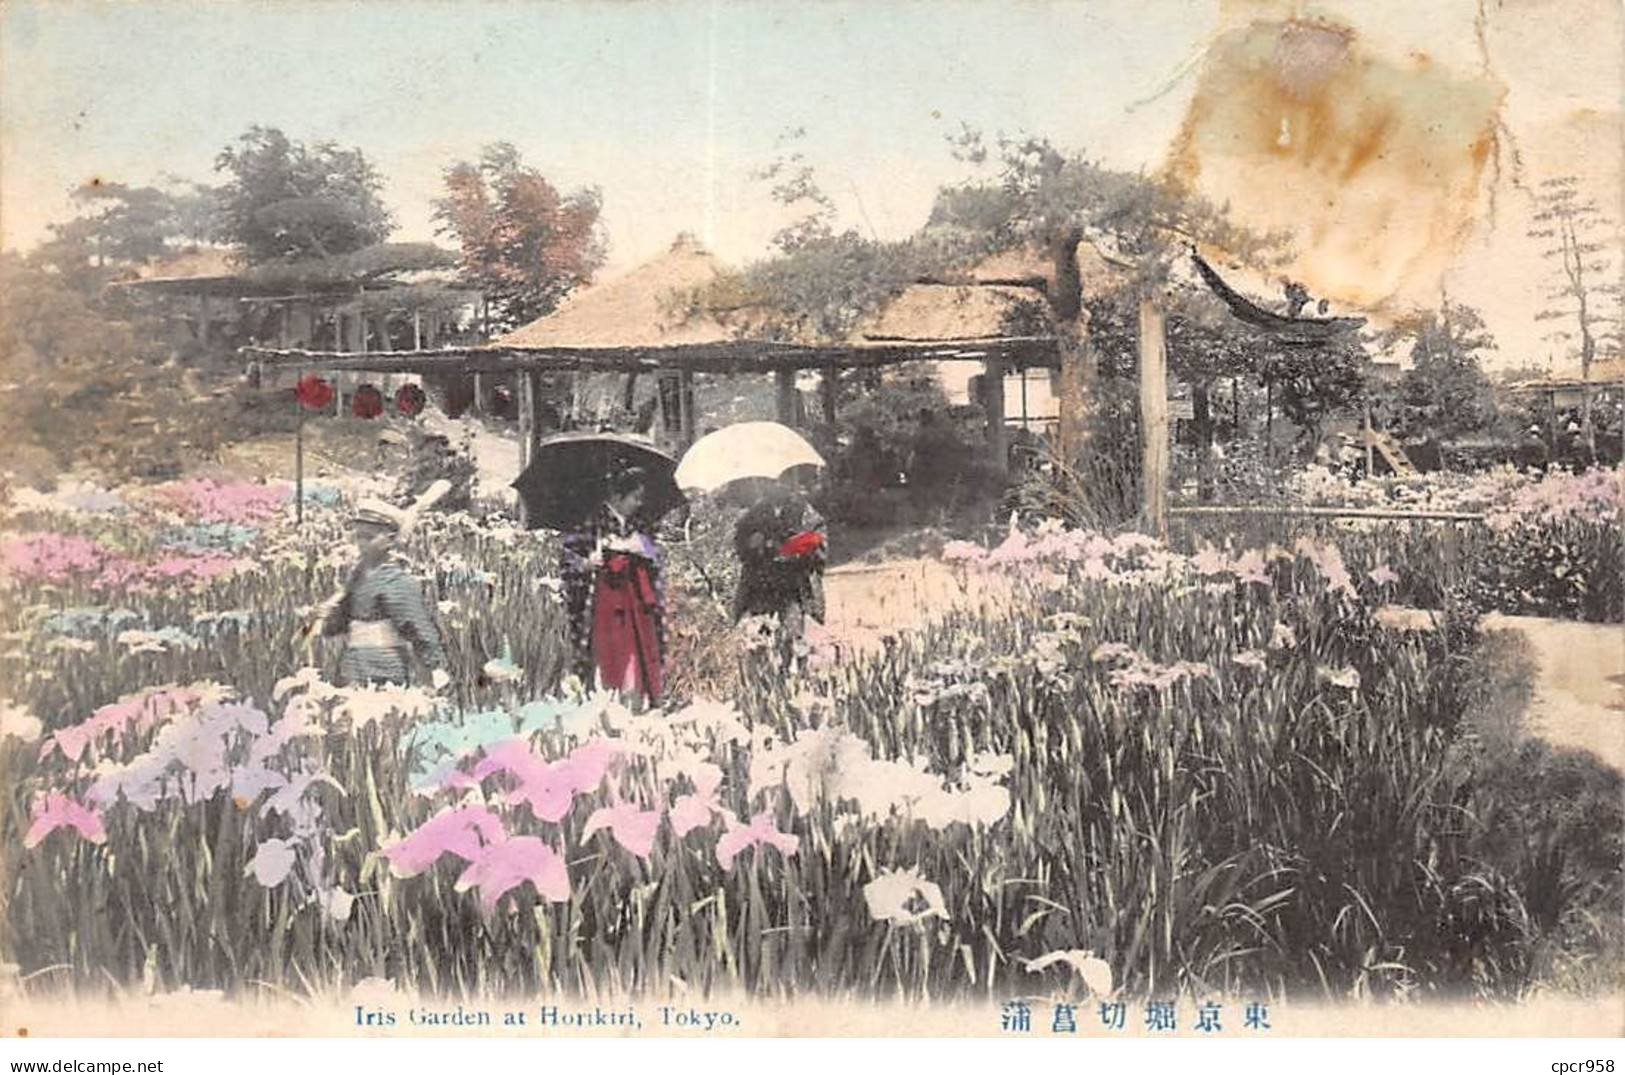 CHINE - SAN36415 - Cachet Tientsin - En L'état - Carte Japonaise - Geishas Dans Un Jardin - China